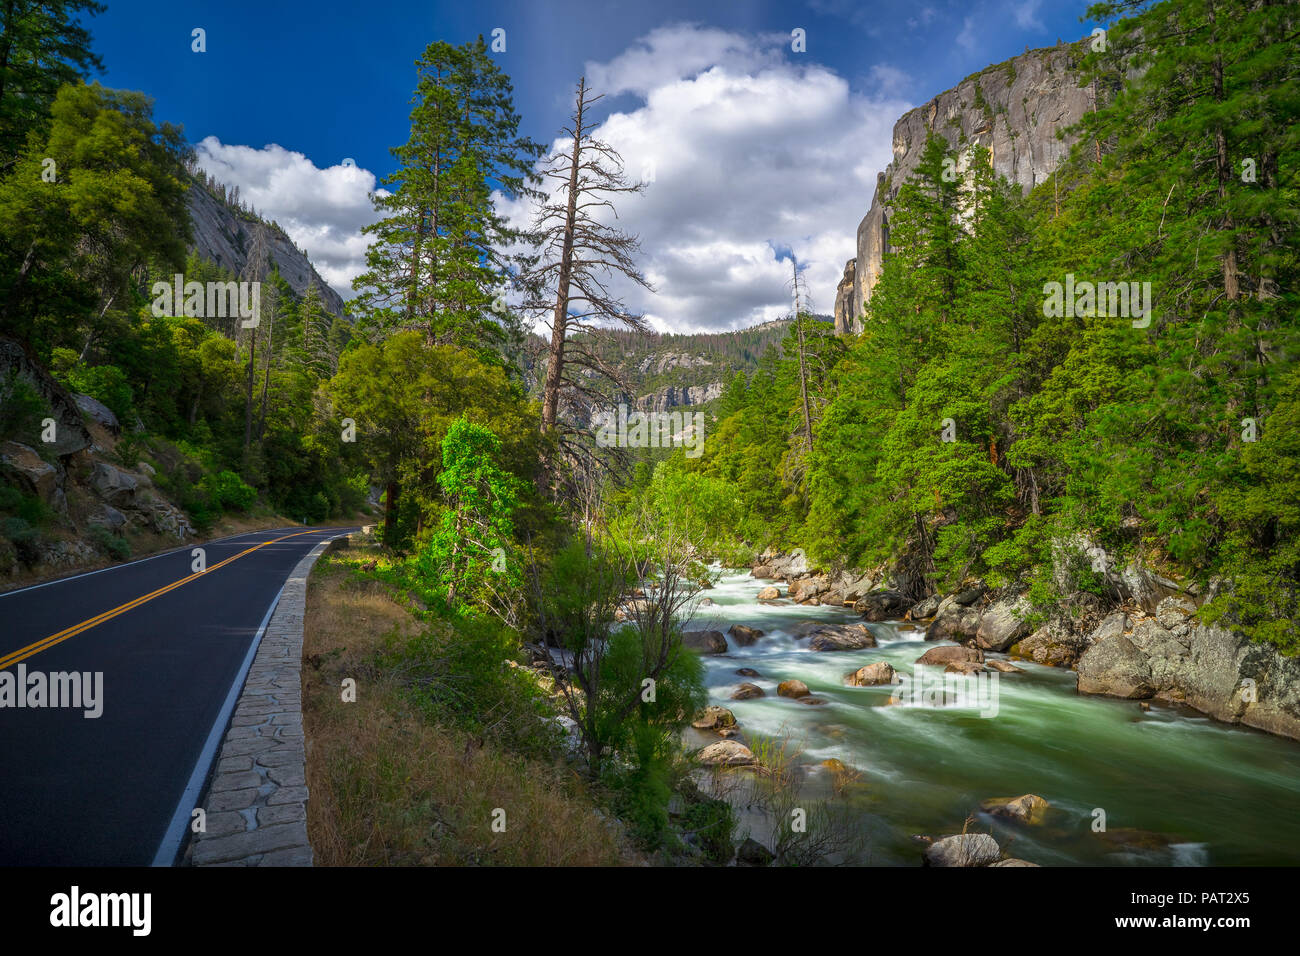 Des rapides sur la rivière Merced, avec face en granit et El Portal (Route 140) - Yosemite National Park Banque D'Images